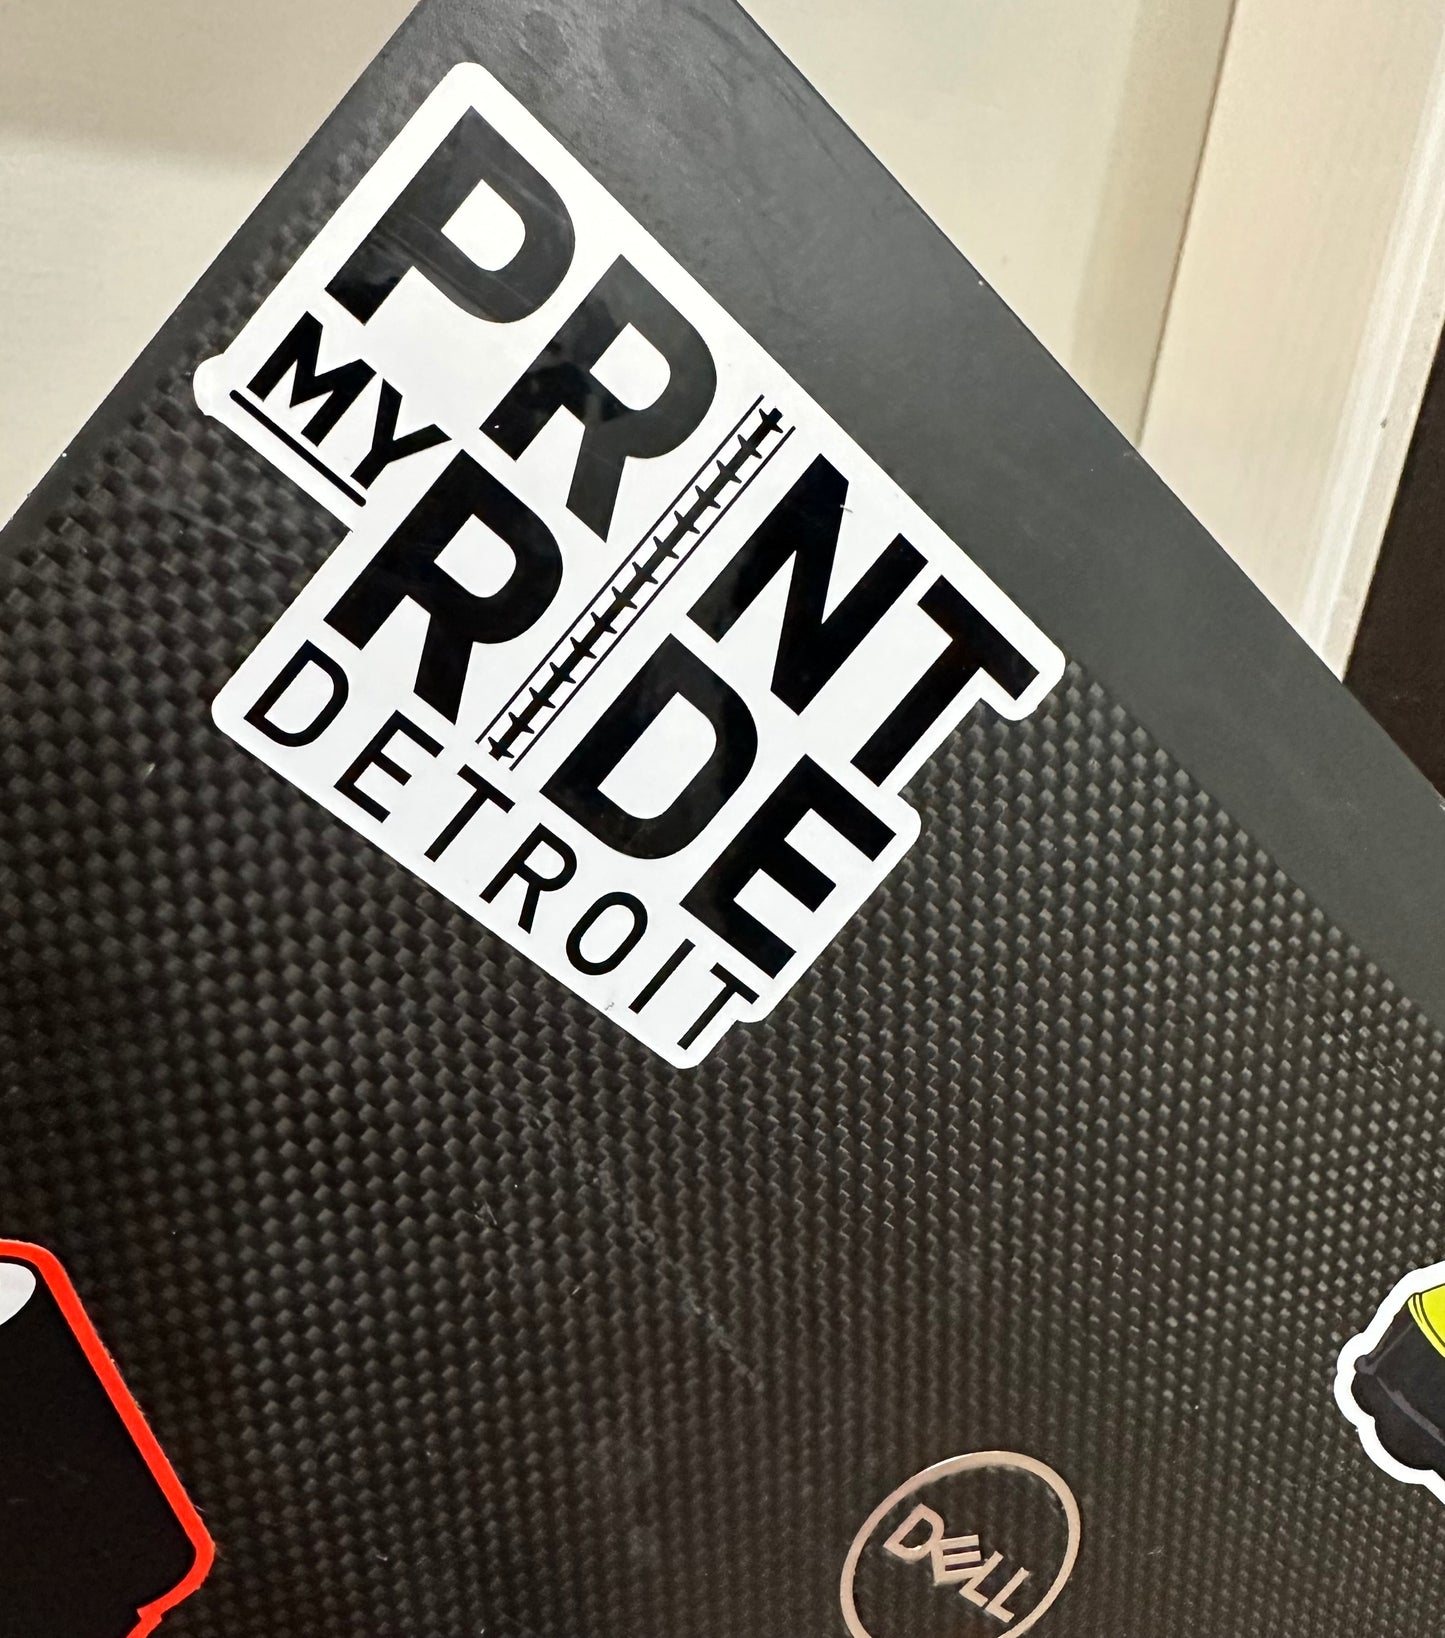 Print My Ride Detroit Sticker